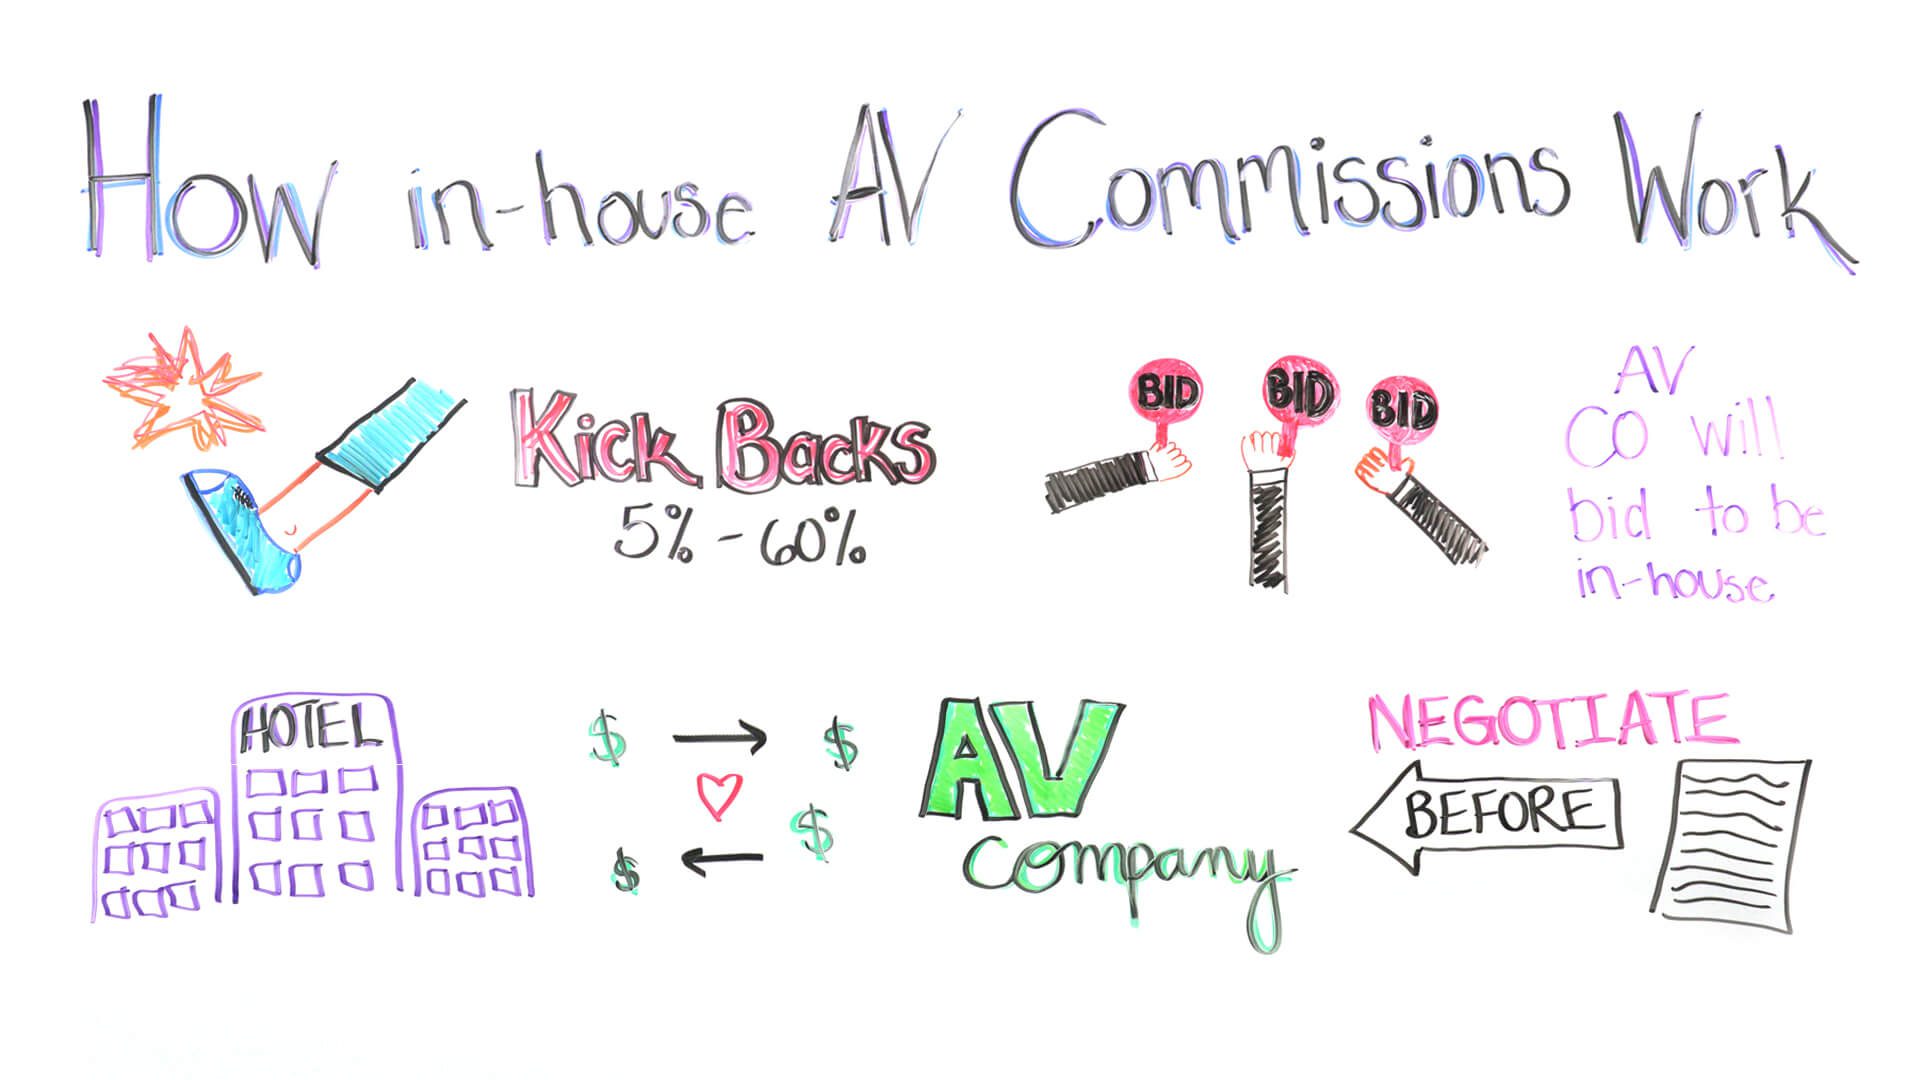 in-house av commissions